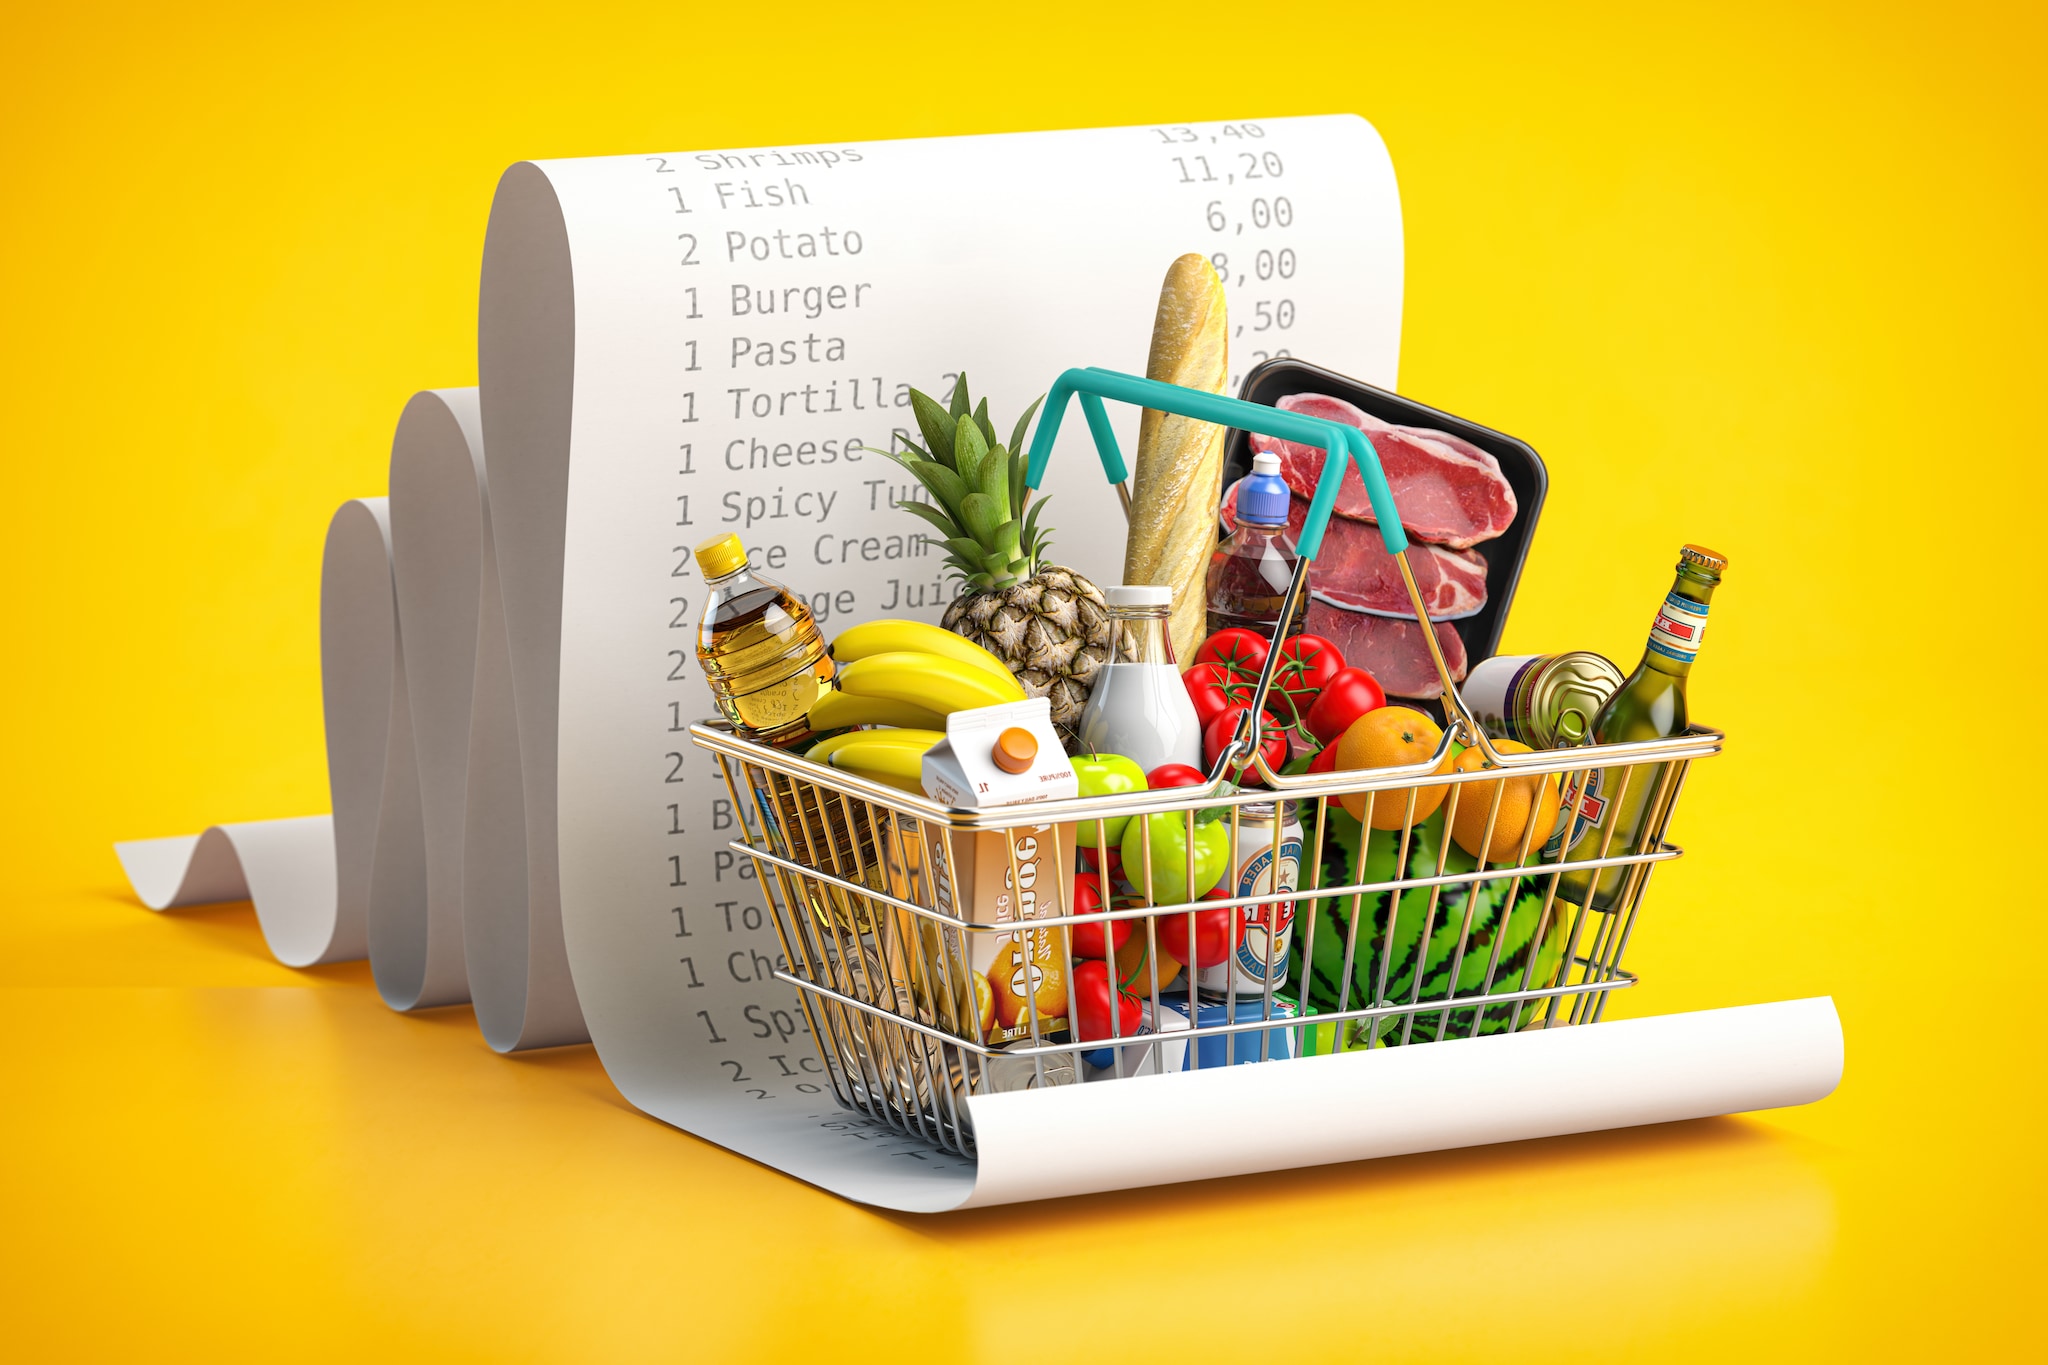 Paniere salva-spesa, c’è l’intesa anche con i supermercati: prezzi calmierati da ottobre a fine anno